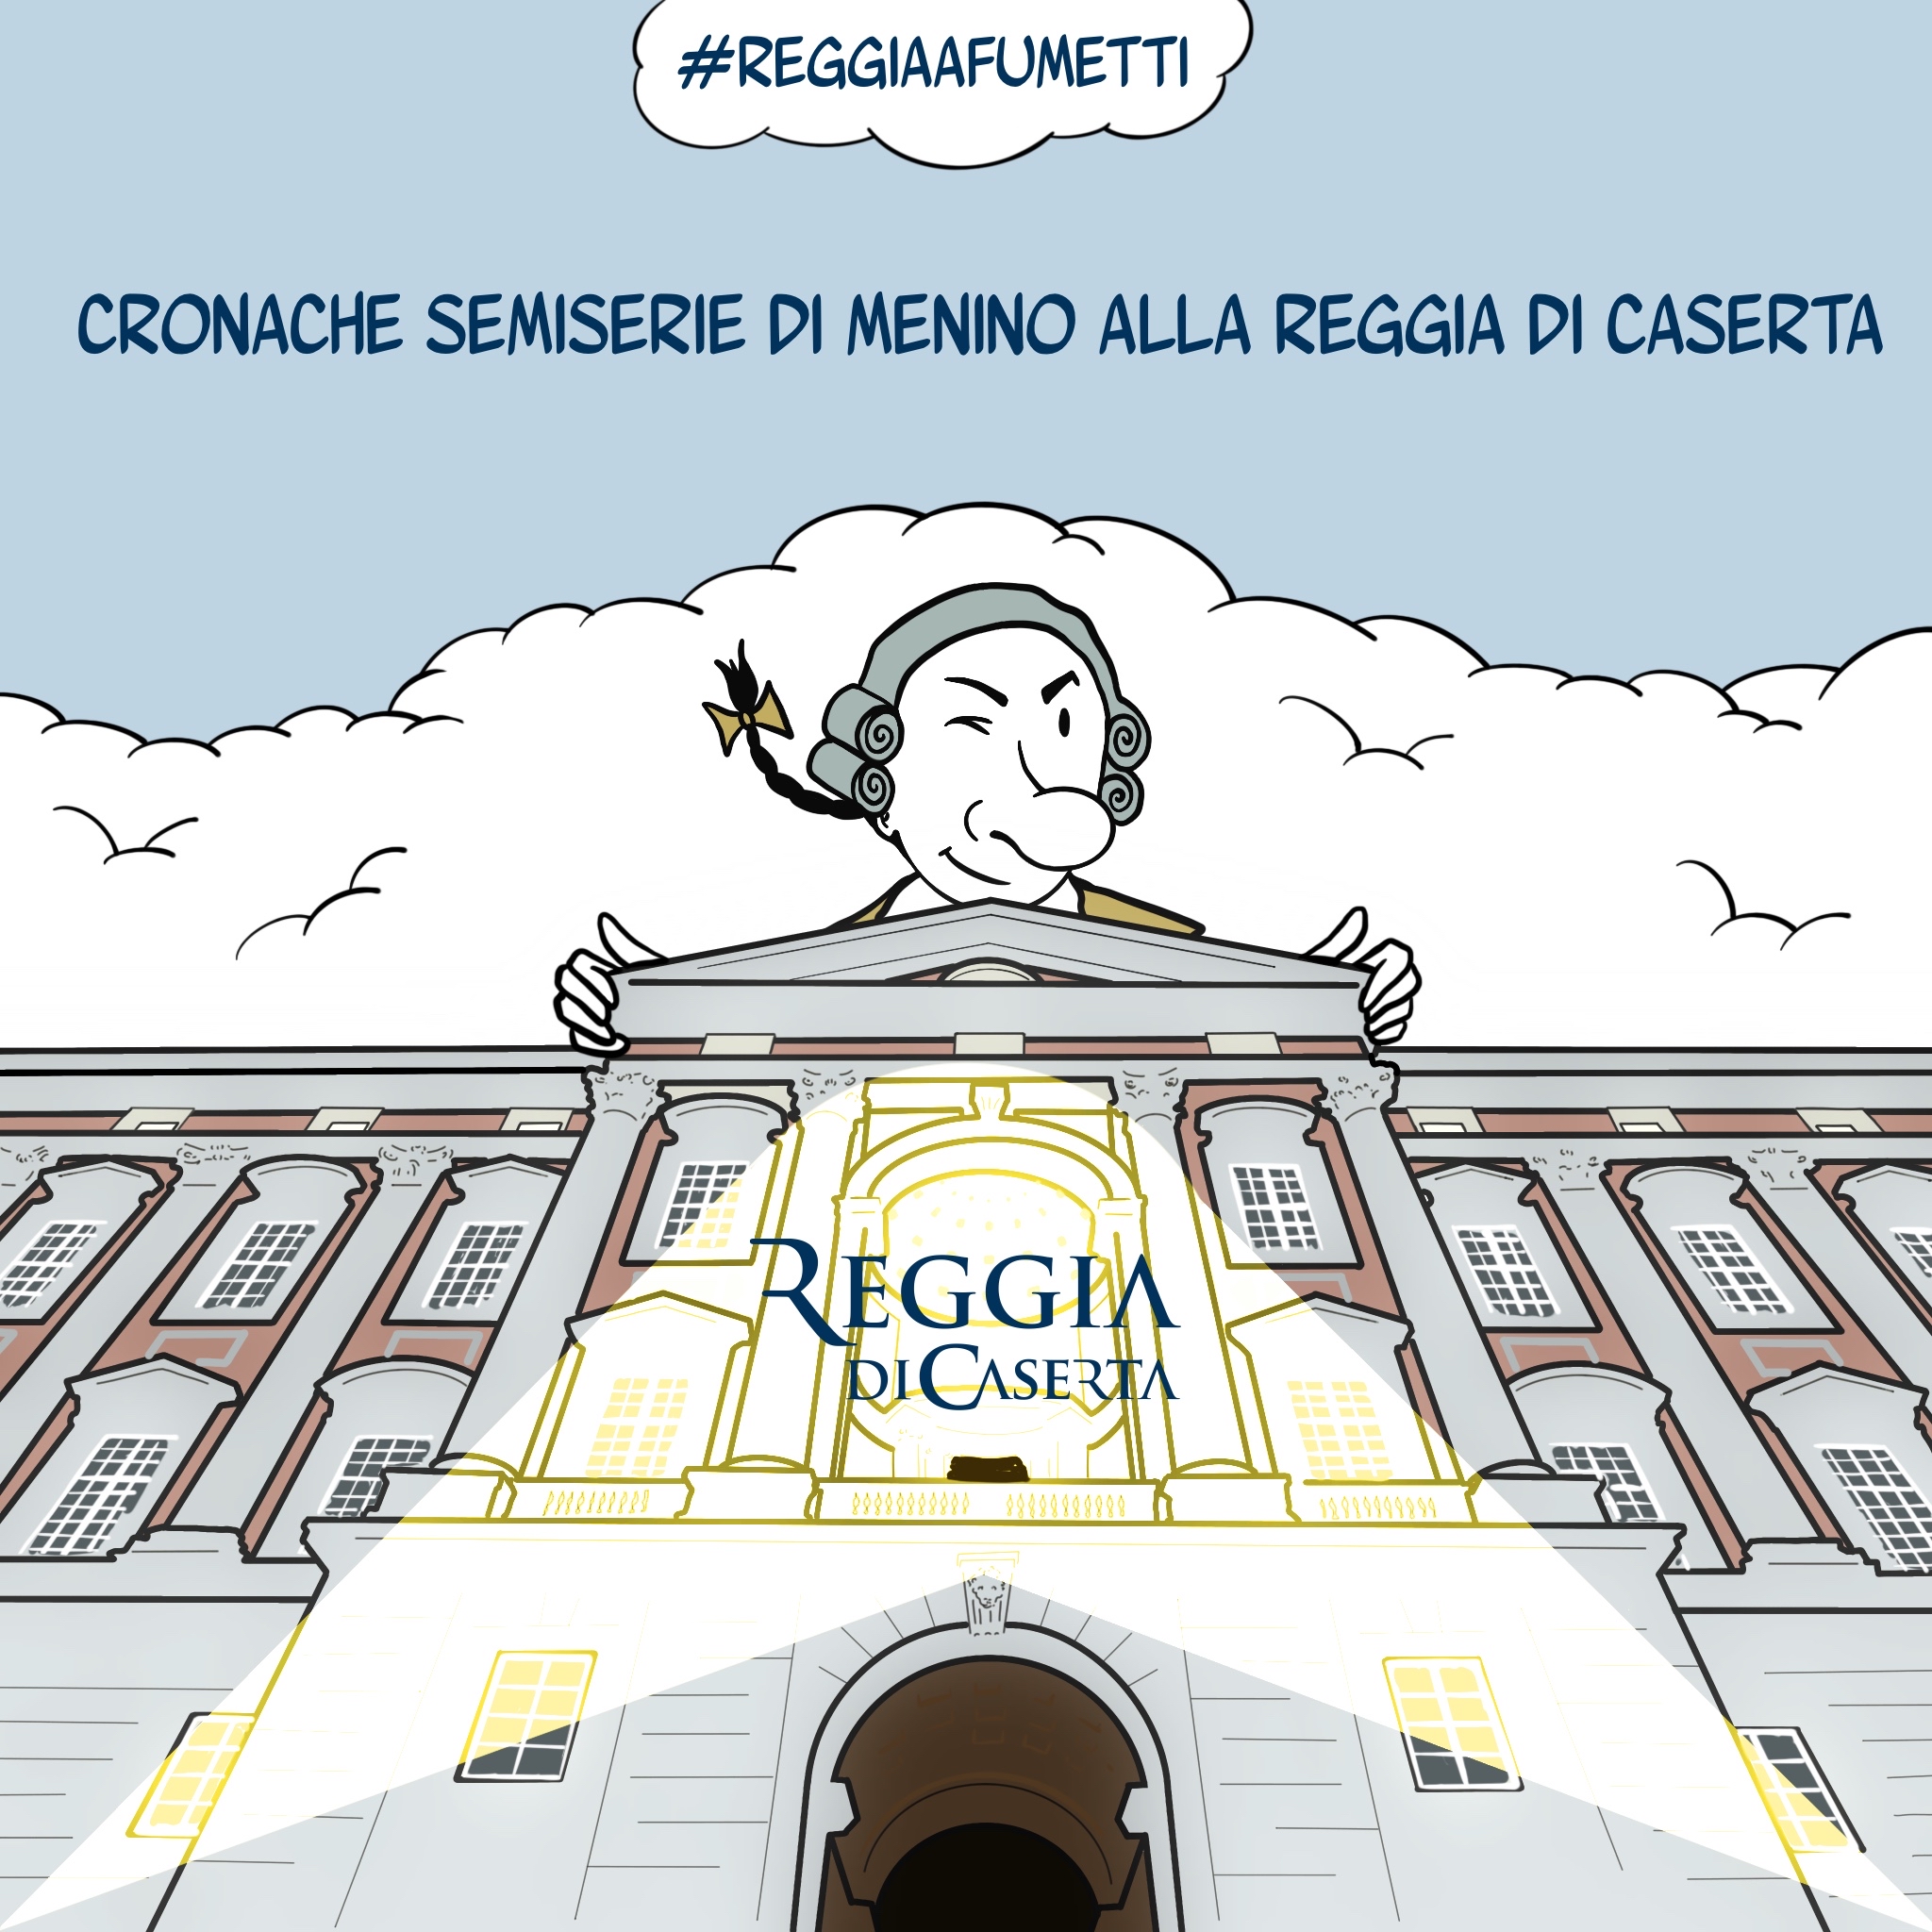 %name #ReggiaAfumetti   CRONACHE SEMISERIE DI MENINO ALLA REGGIA DI CASERTA